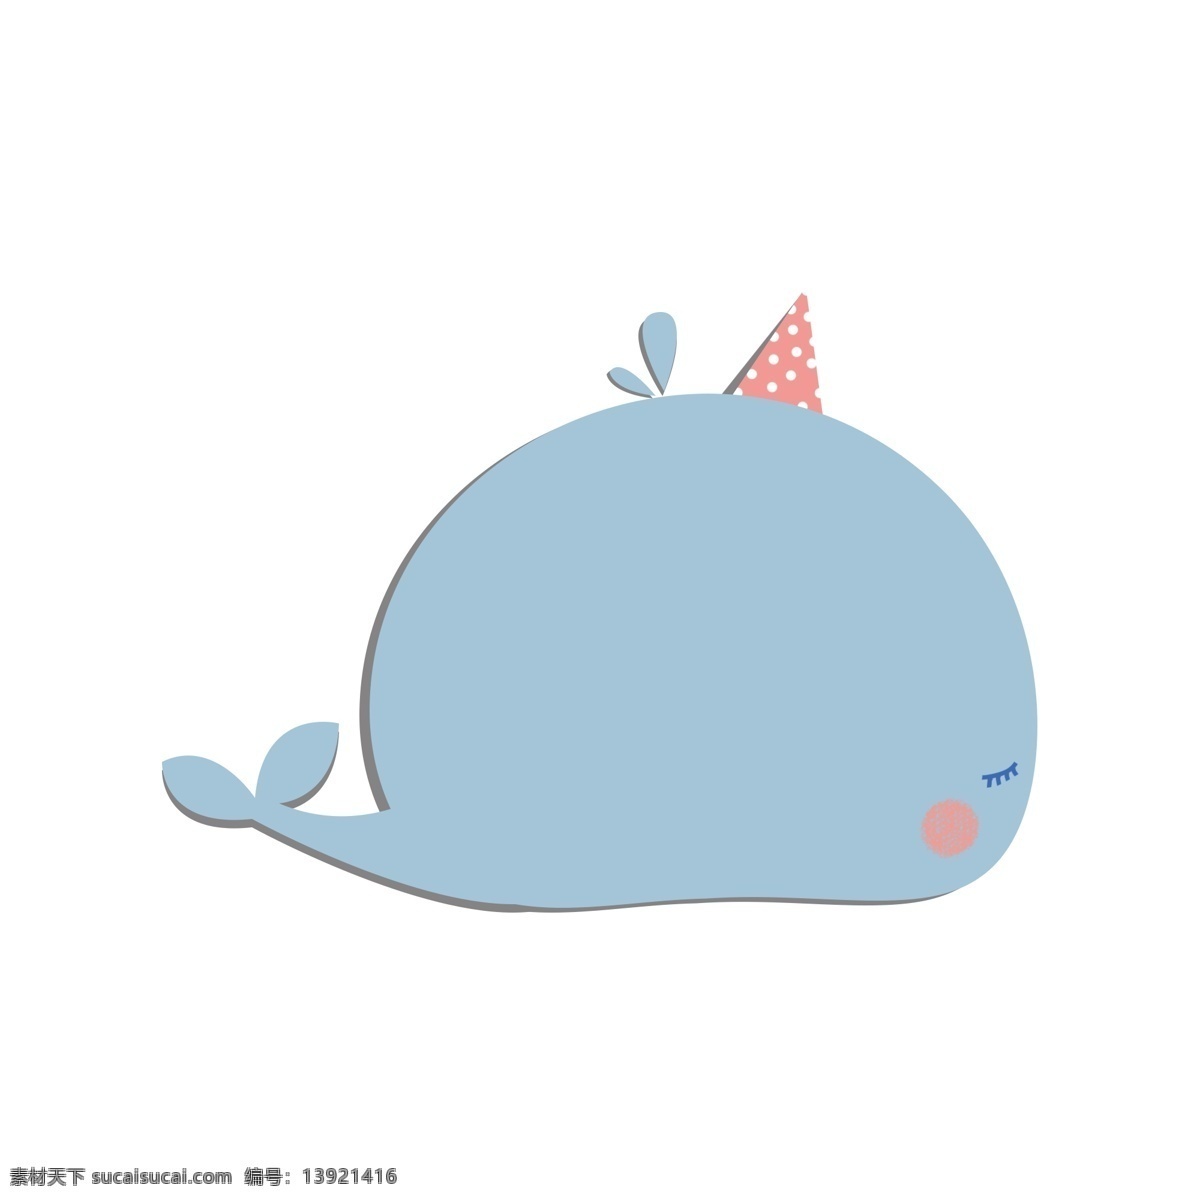 蓝色 鲸鱼 动物 可爱 便签 气泡 框 蓝色气泡框 鲸鱼对话框 动物气泡框 蓝色鲸鱼 可爱便签 免 扣